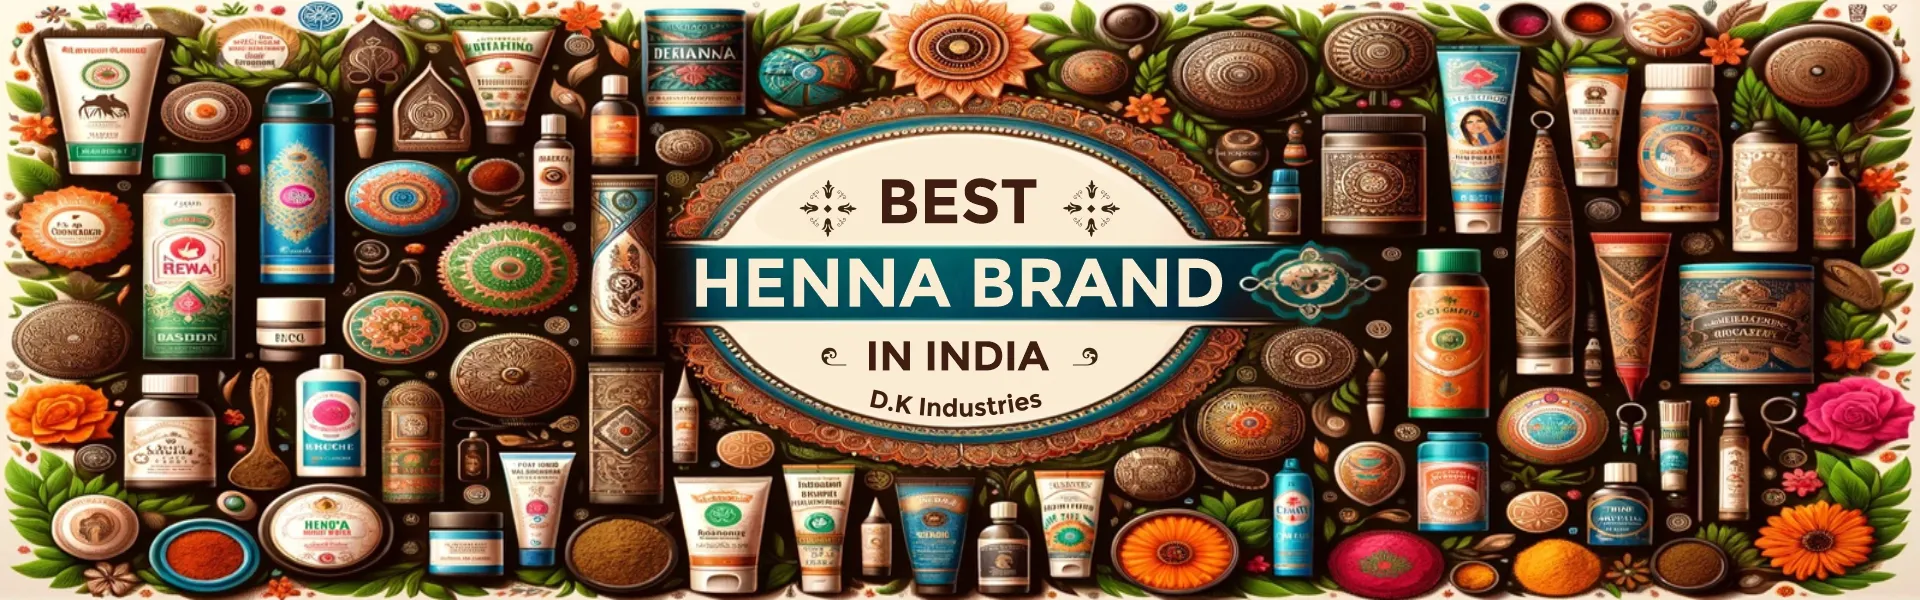 Best Henna Brand in India - www.dkihenna.com